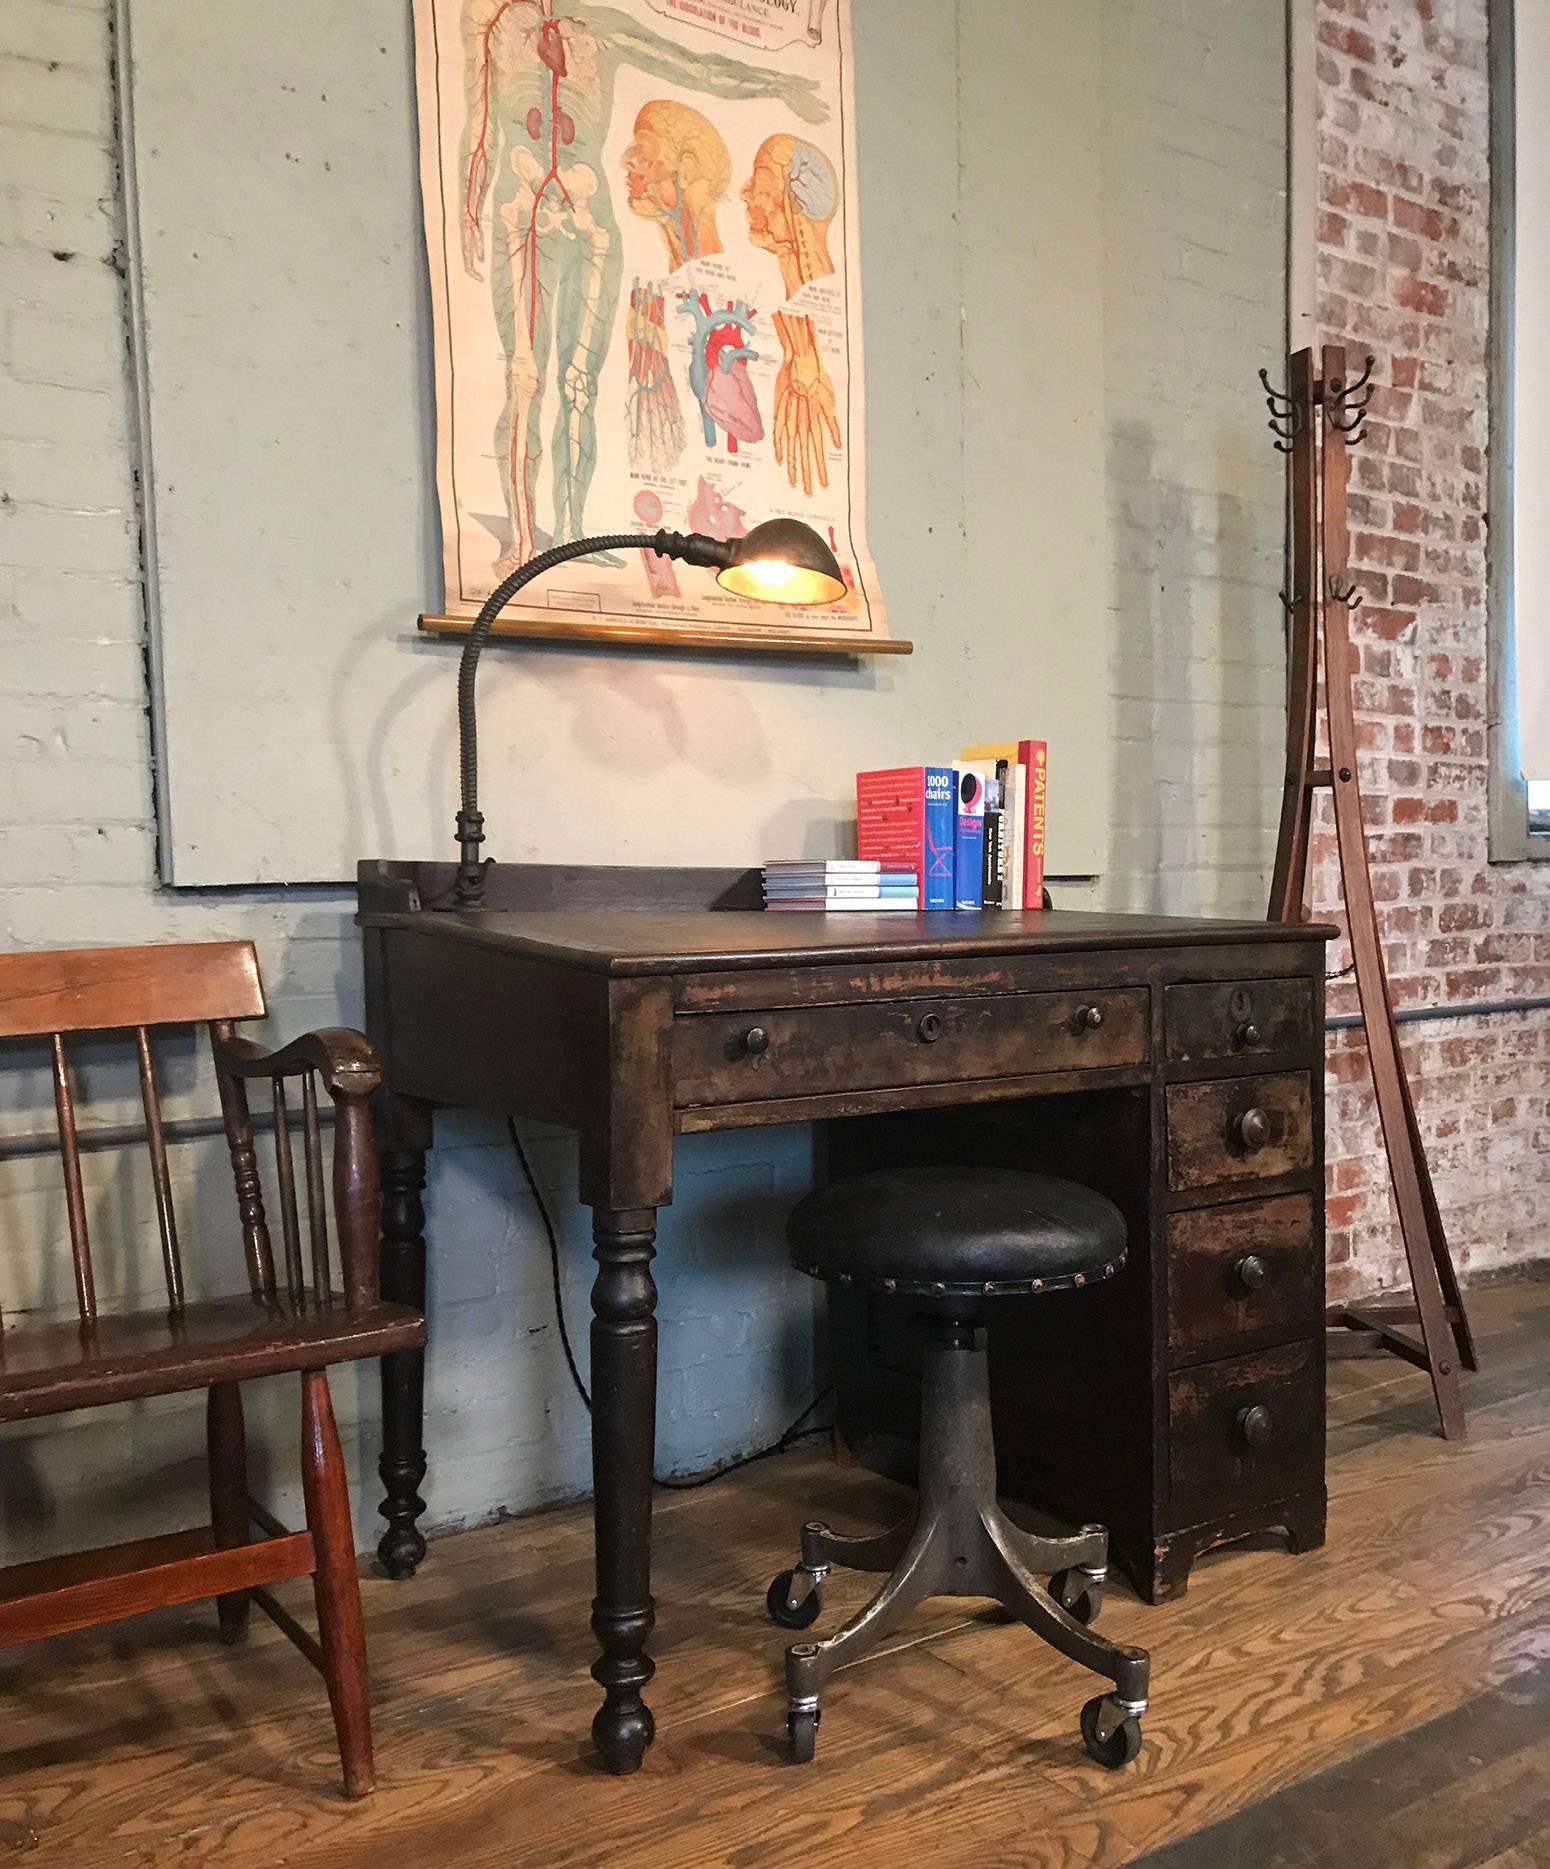 American Vintage Industrial Clerk's Desk Workbench with Adjustable Goose-Neck Task Light